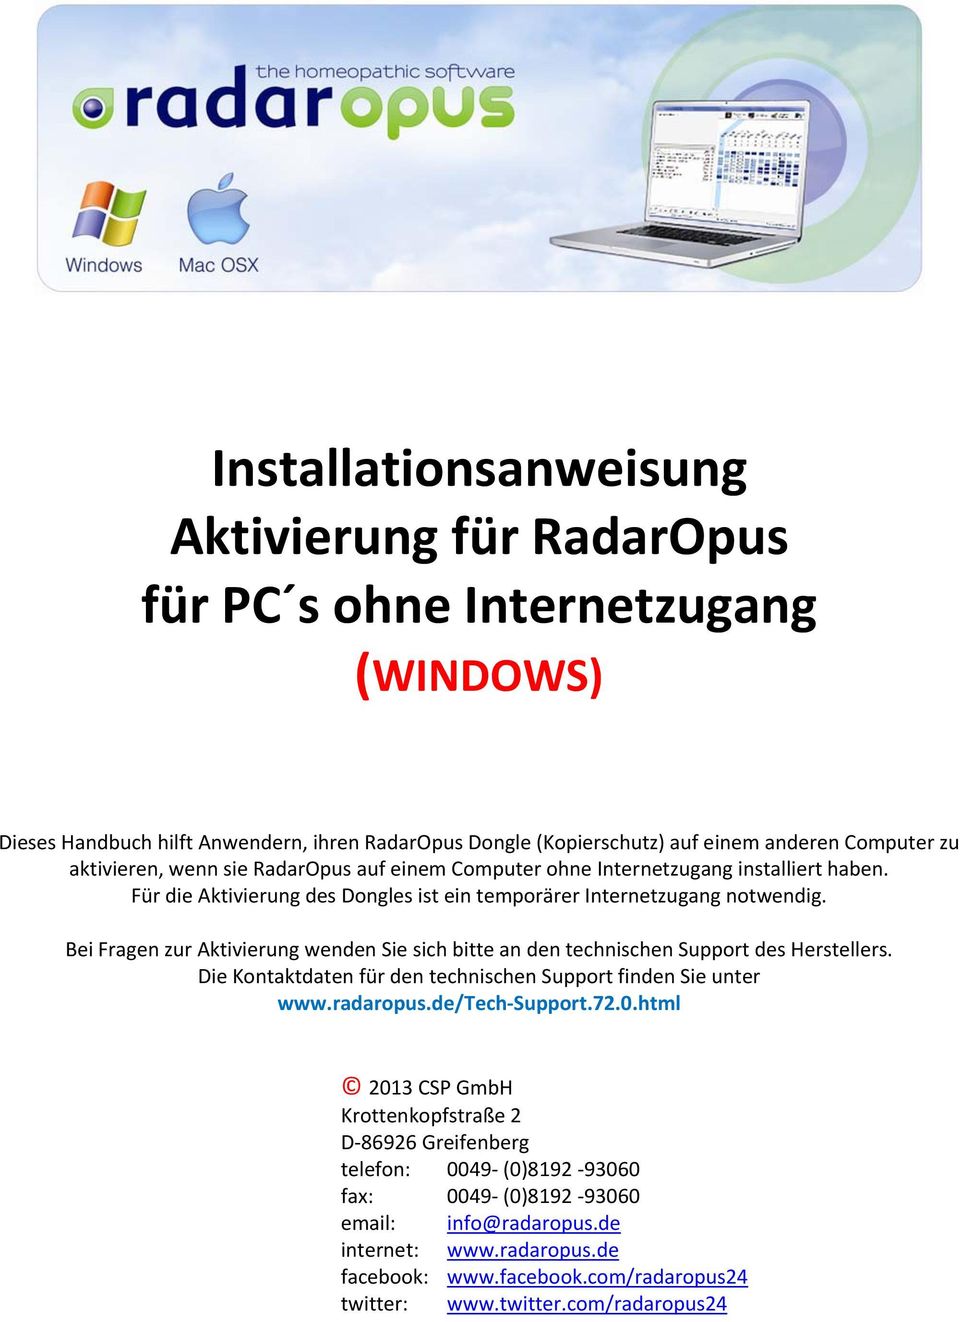 Bei Fragen zur Aktivierung wenden Sie sich bitte an den technischen Support des Herstellers. Die Kontaktdaten für den technischen Support finden Sie unter www.radaropus.de/tech Support.72.0.